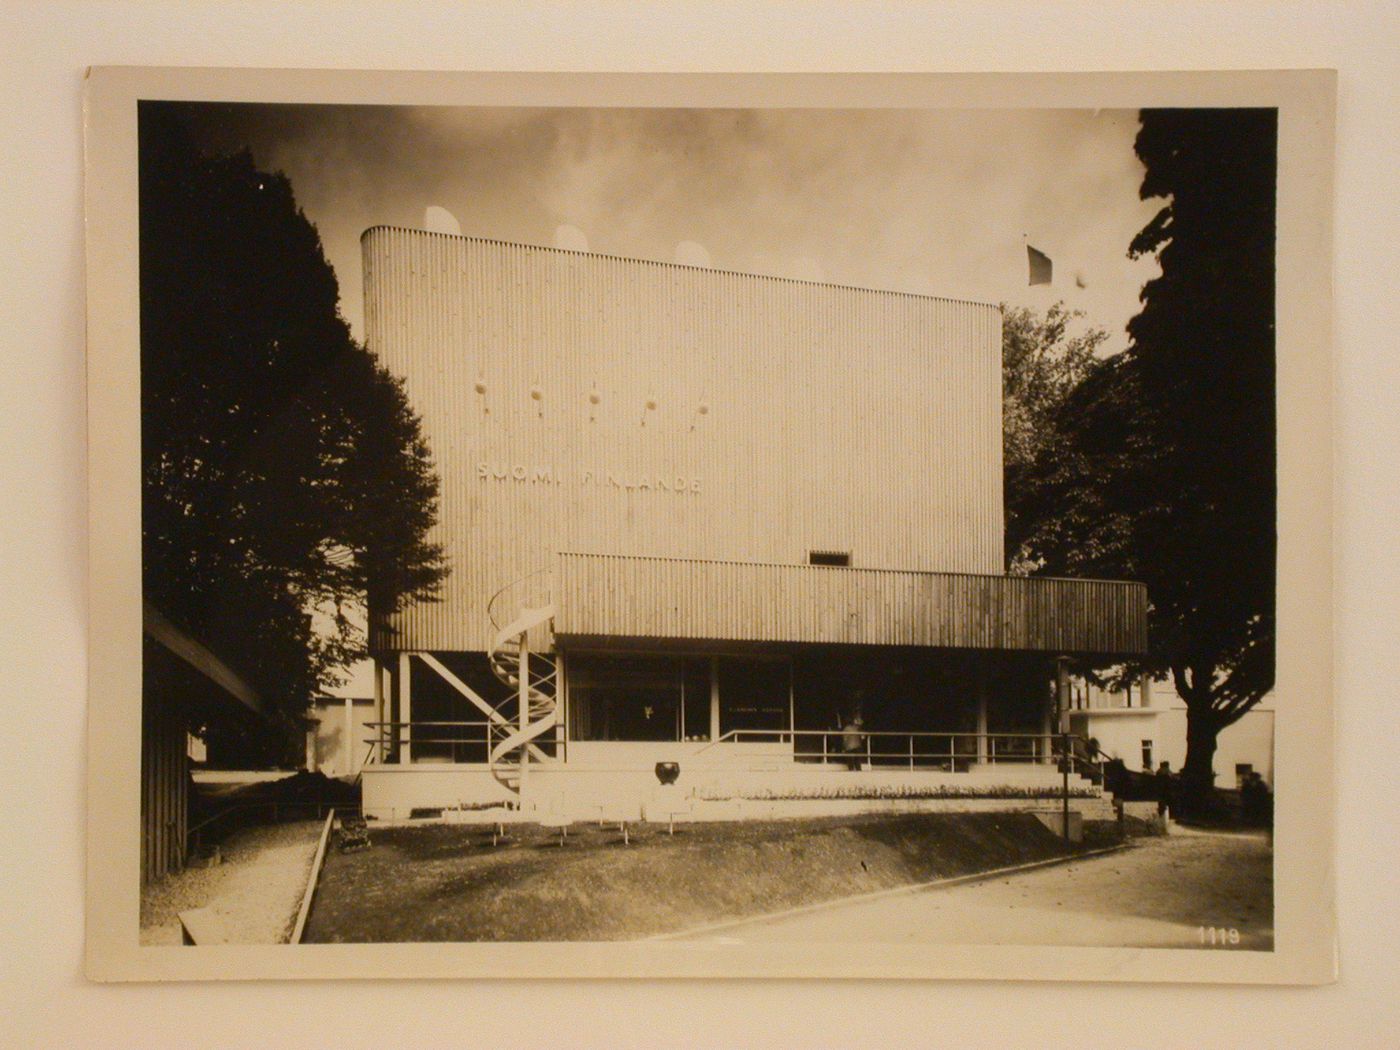 View of Finland's pavilion, 1937 Exposition internationale, Paris, France